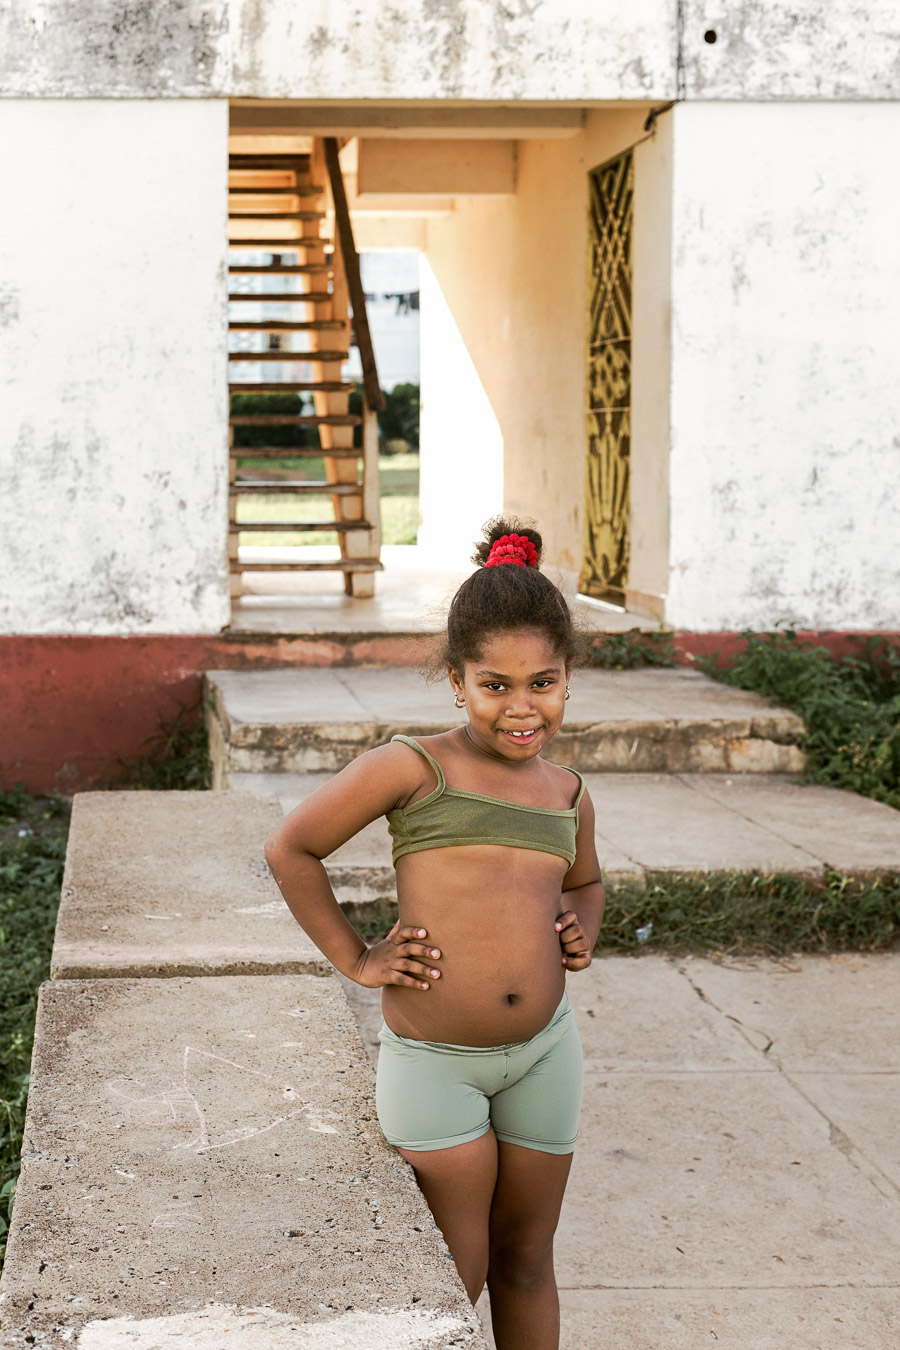 Kuba, Oktober 2016 –Trinidad Antje Kroeger 311